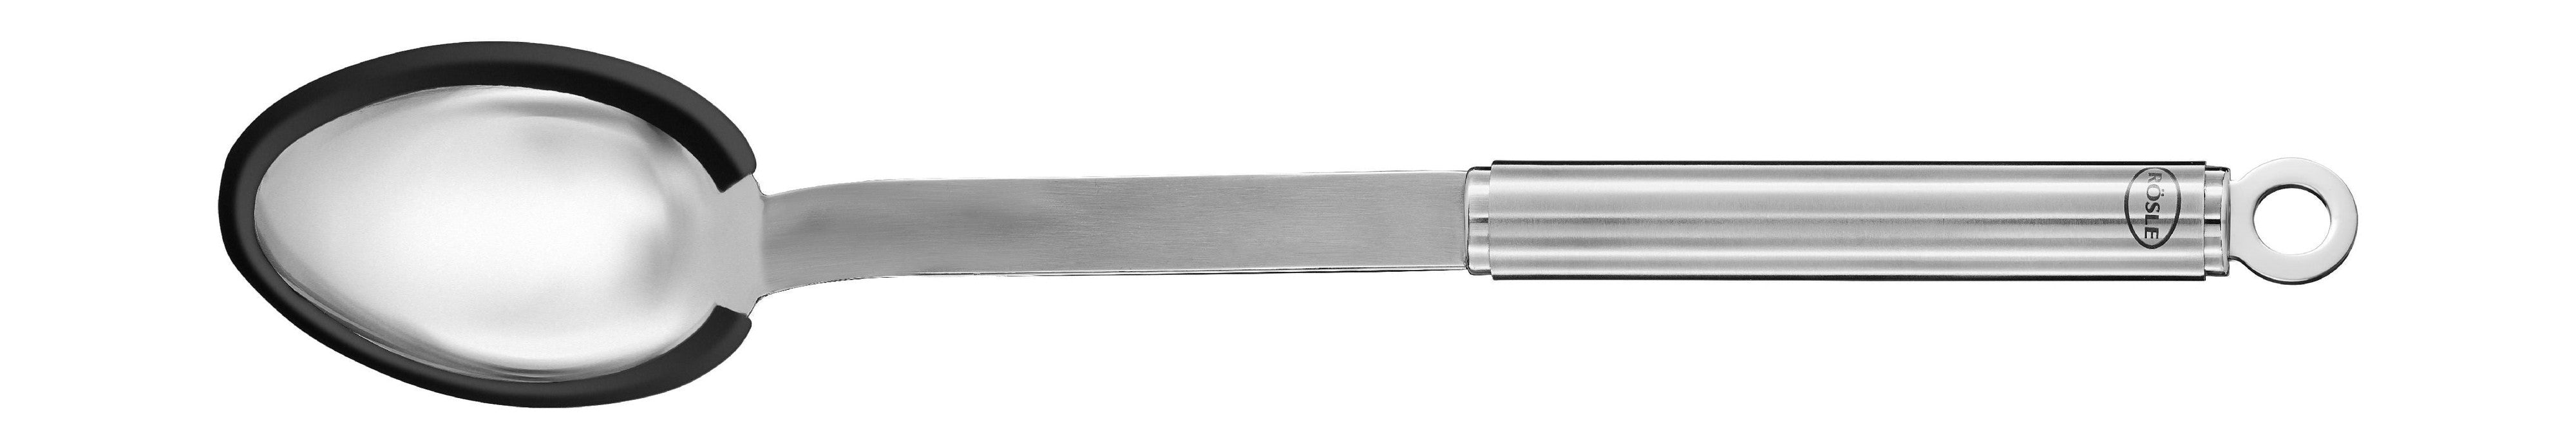 Cuchara de rösle basting/cuchara de masa 34 cm